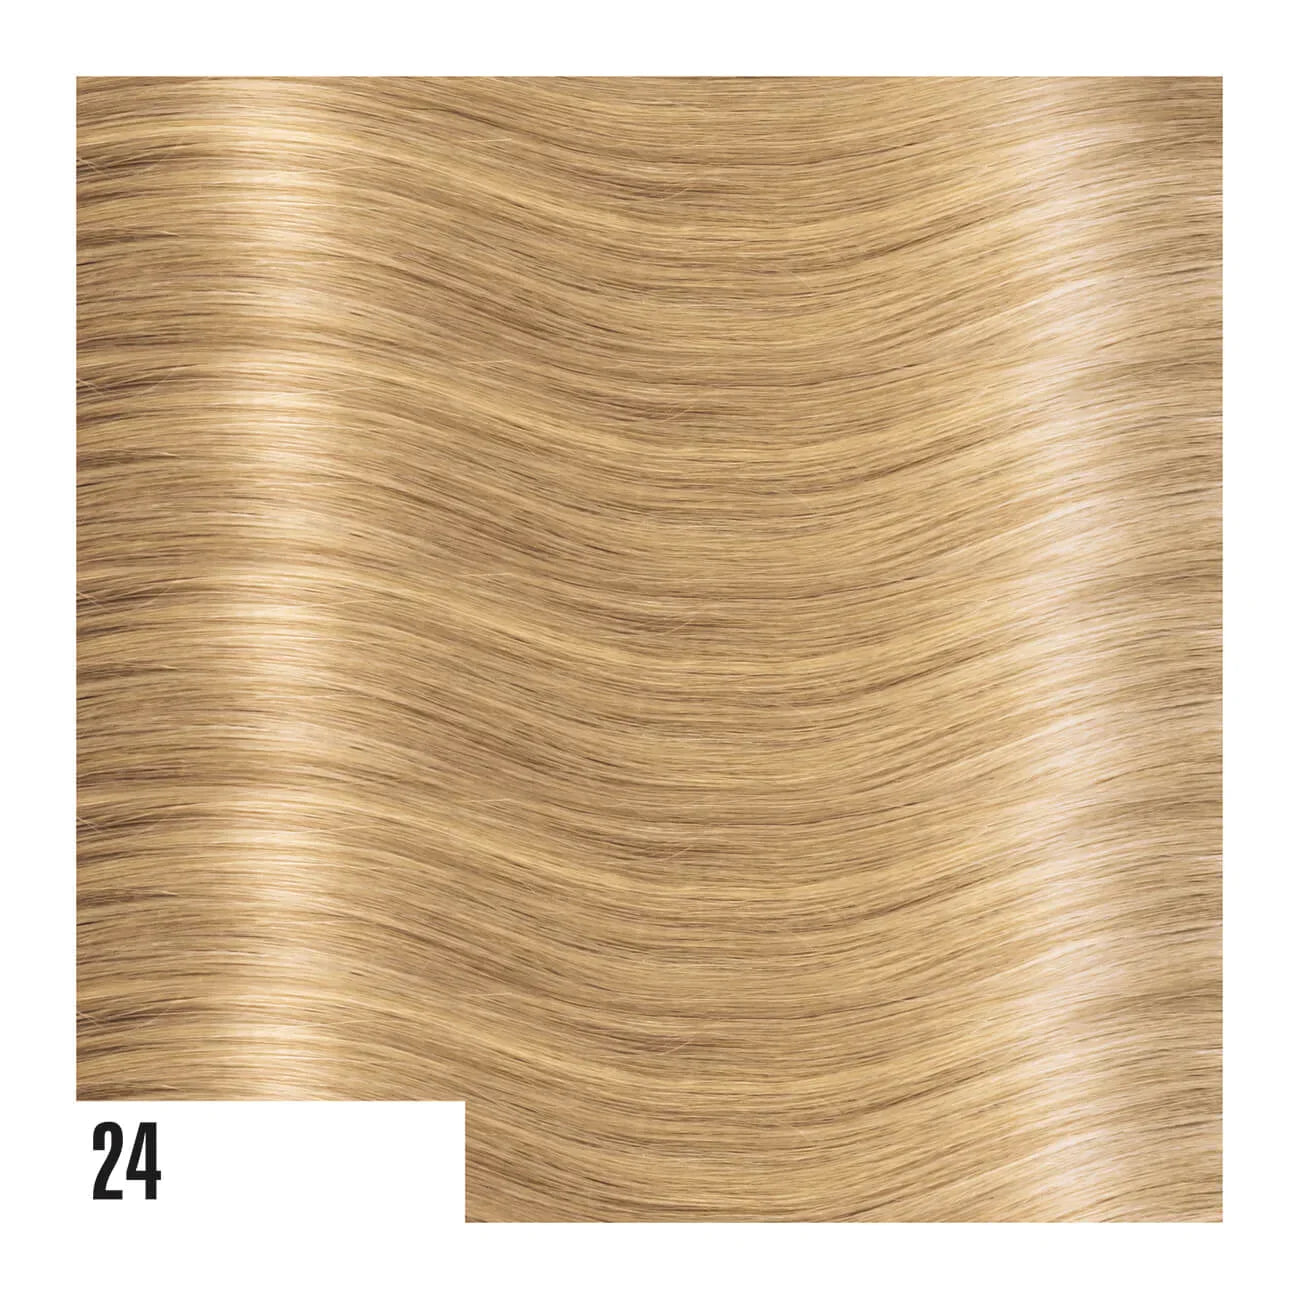 In Tape Hair extension di capelli lisci (50cm/55cm)